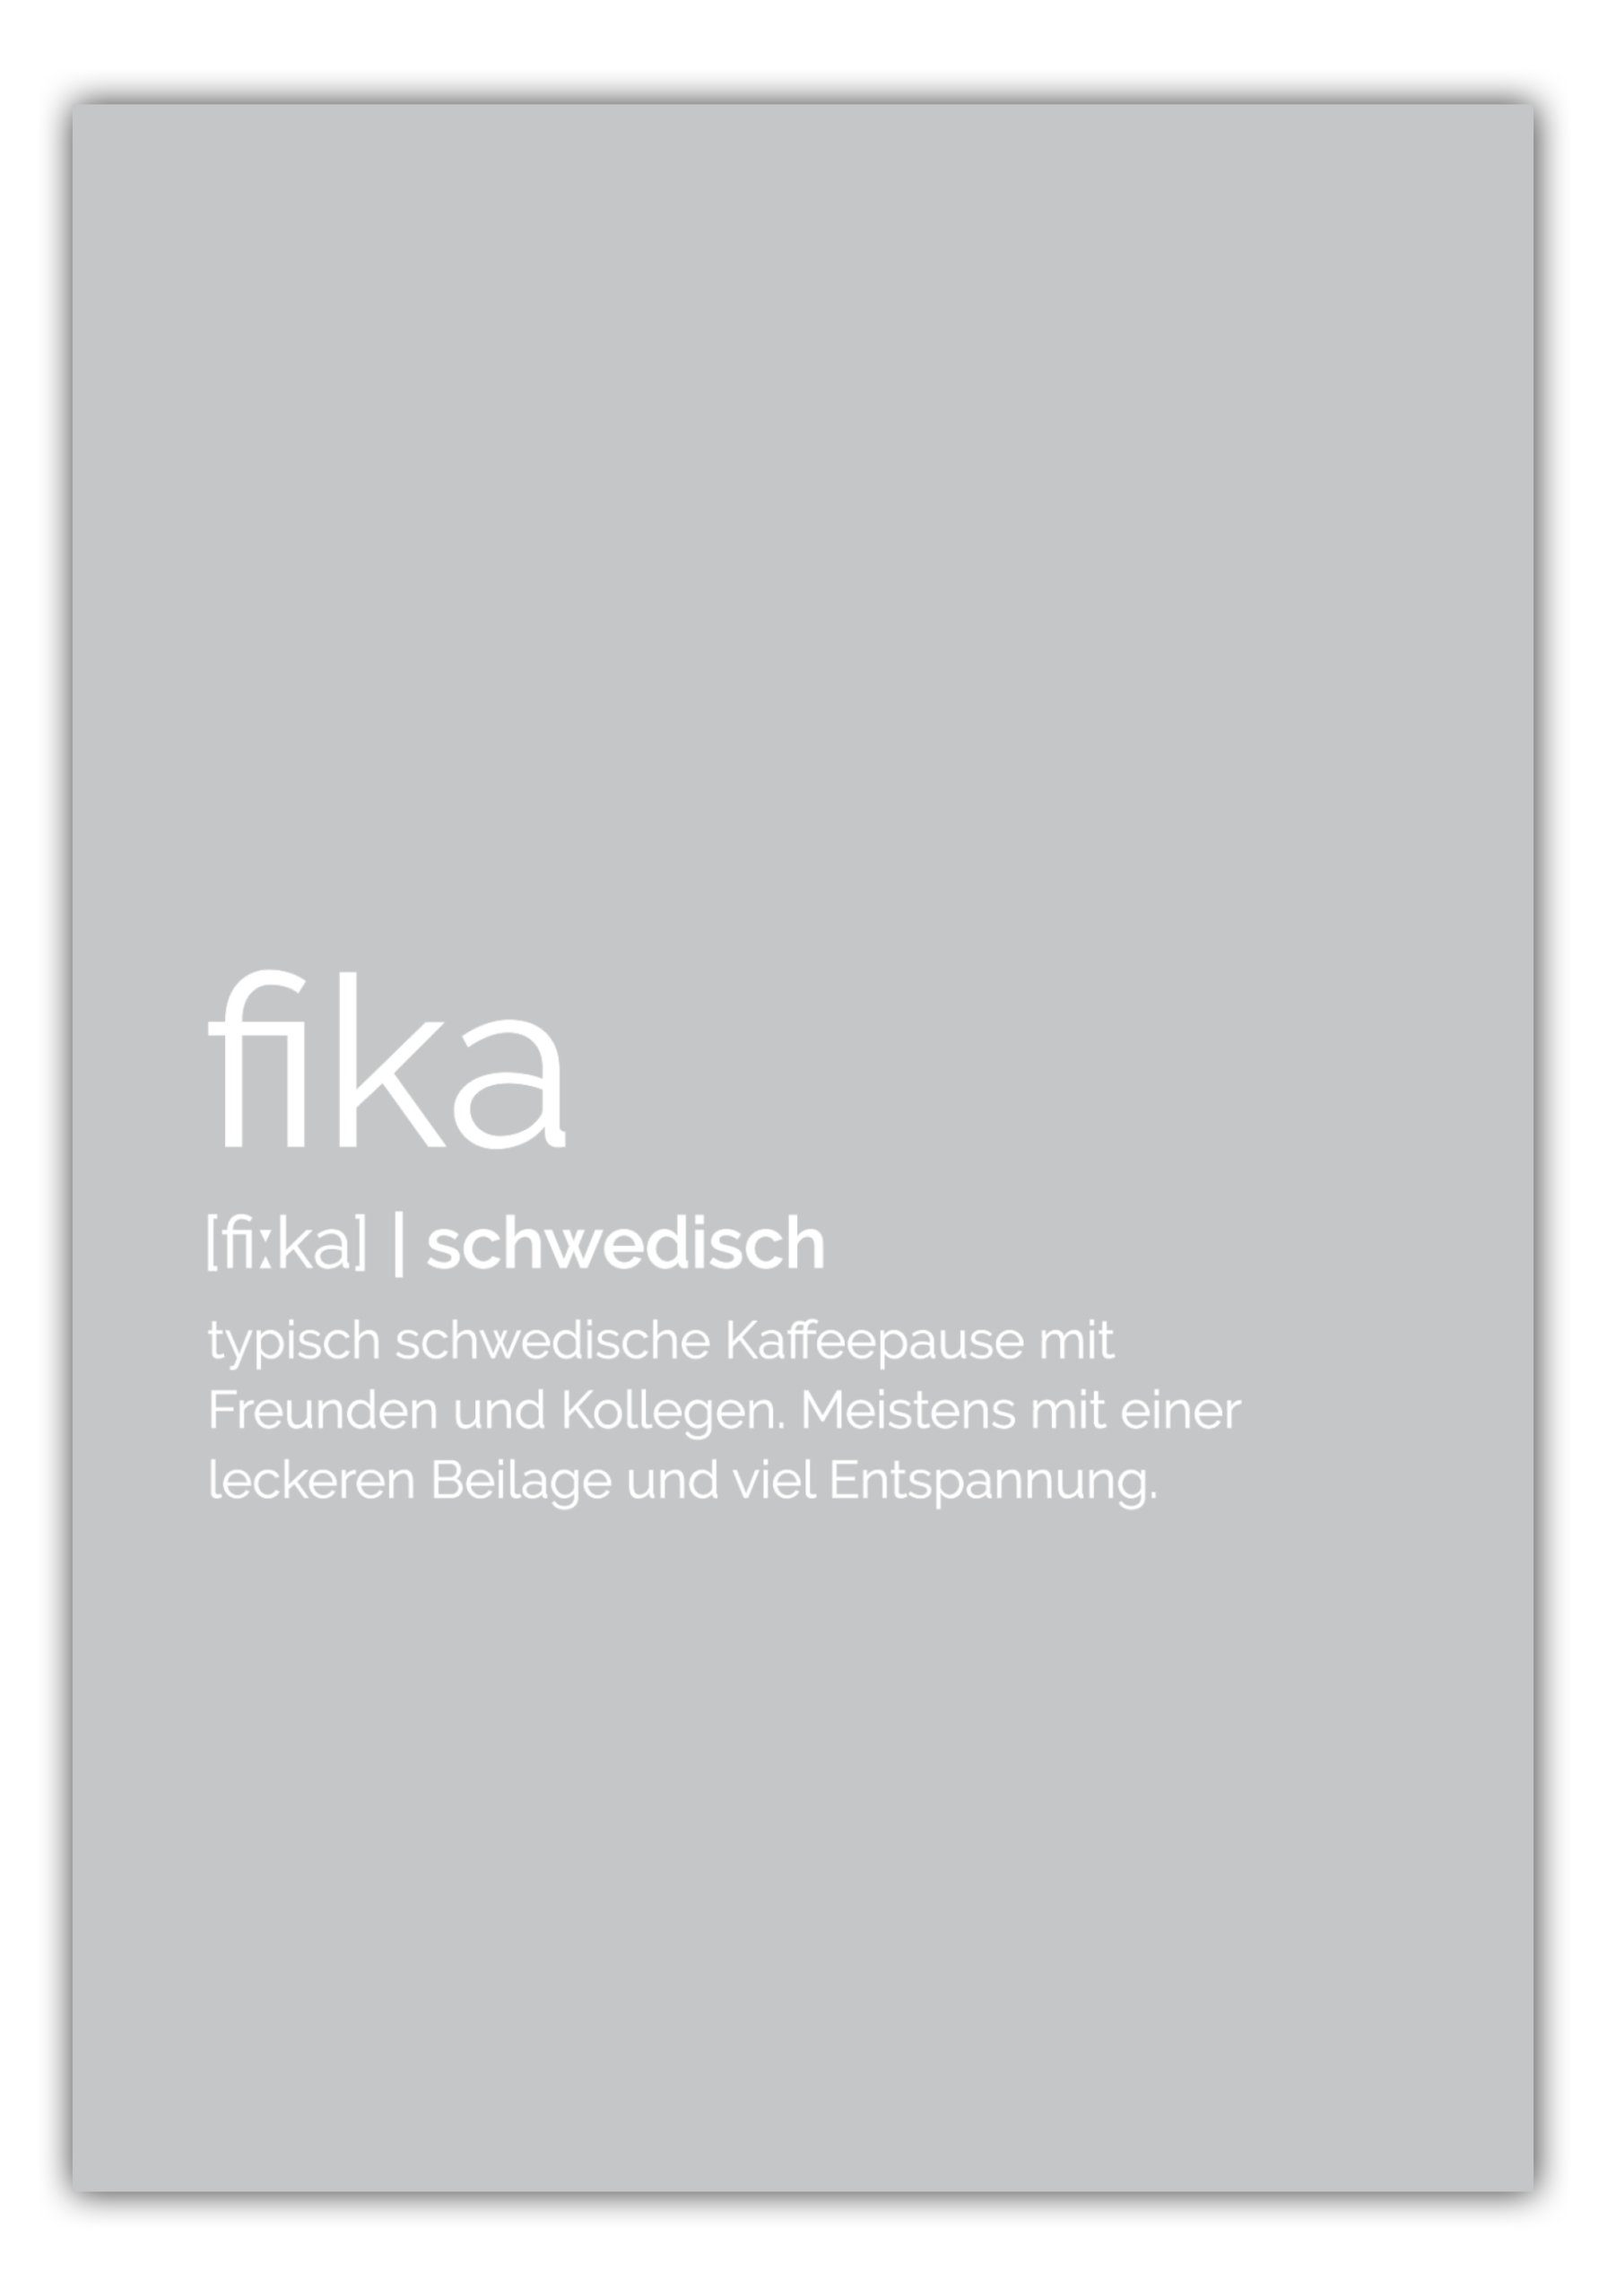 NORDIC WORDS Poster Fika Definition, Schwedische Kaffeepause, viele Farbausführungen und bis zu 10 Größen